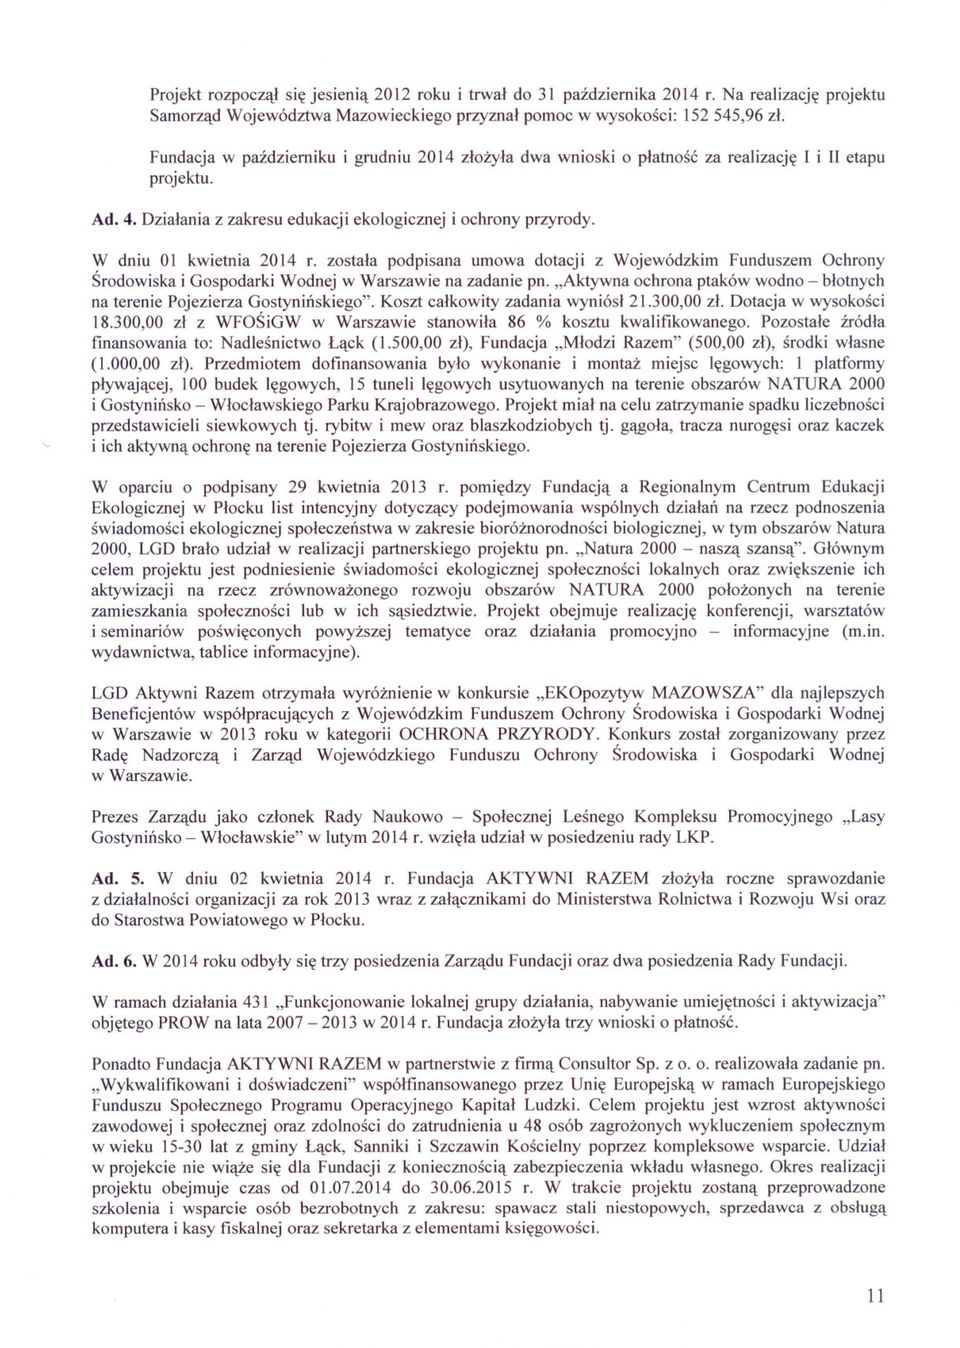 W dniu Ol kwietnia 2014 r. zostala podpisana umowa dotacji z Wojewódzkim Funduszem Ochrony Srodowiska i Gospodarki Wodnej w Warszawie na zadanie pn.